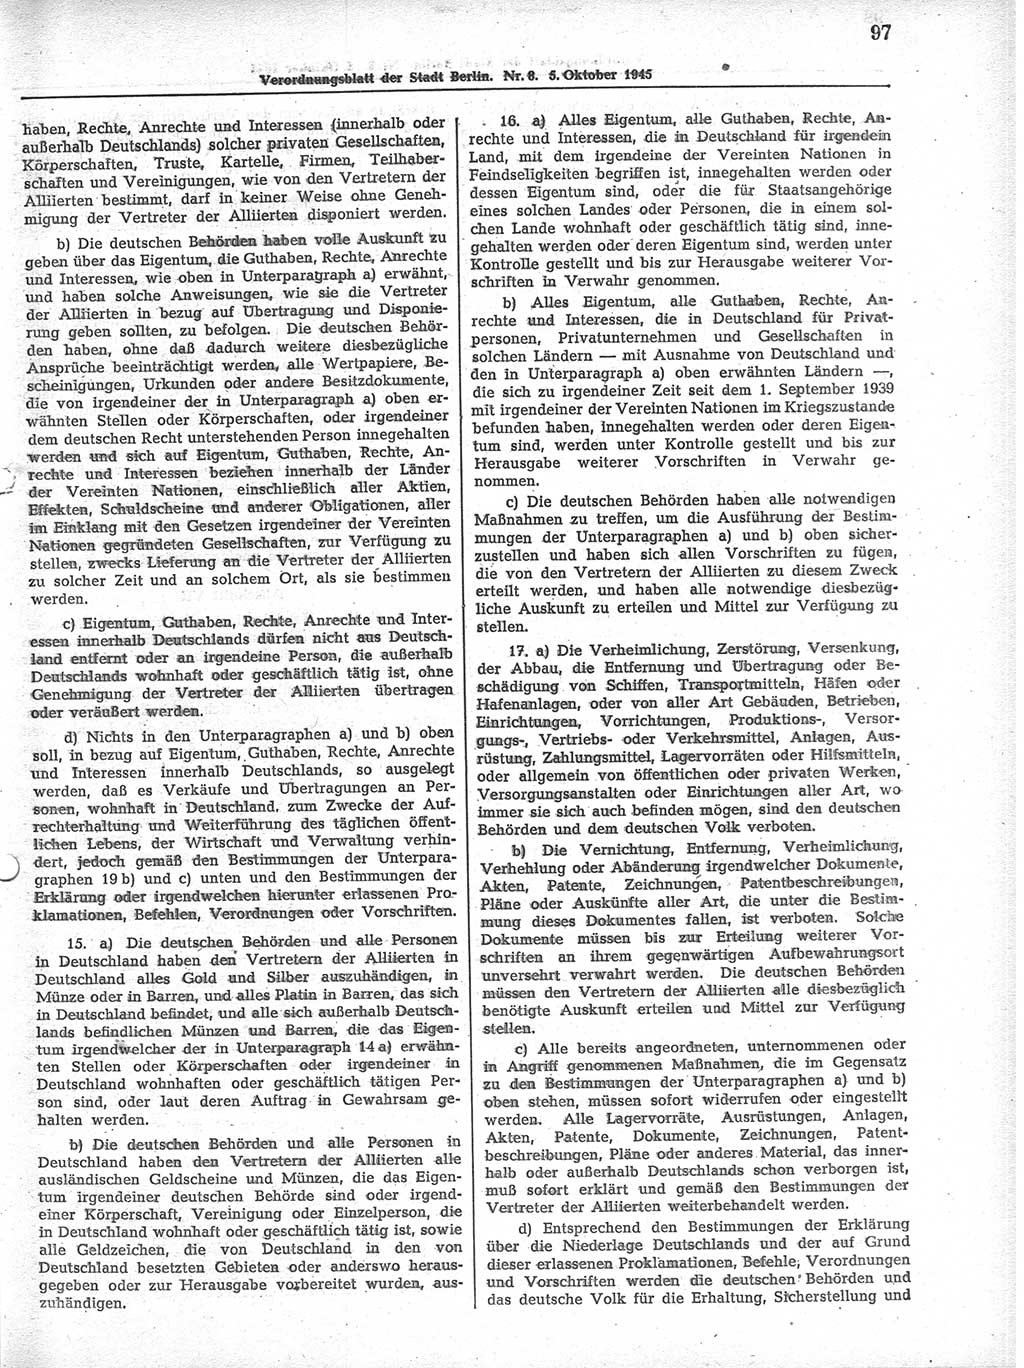 Verordnungsblatt (VOBl.) der Stadt Berlin 1945, Seite 97 (VOBl. Bln. 1945, S. 97)